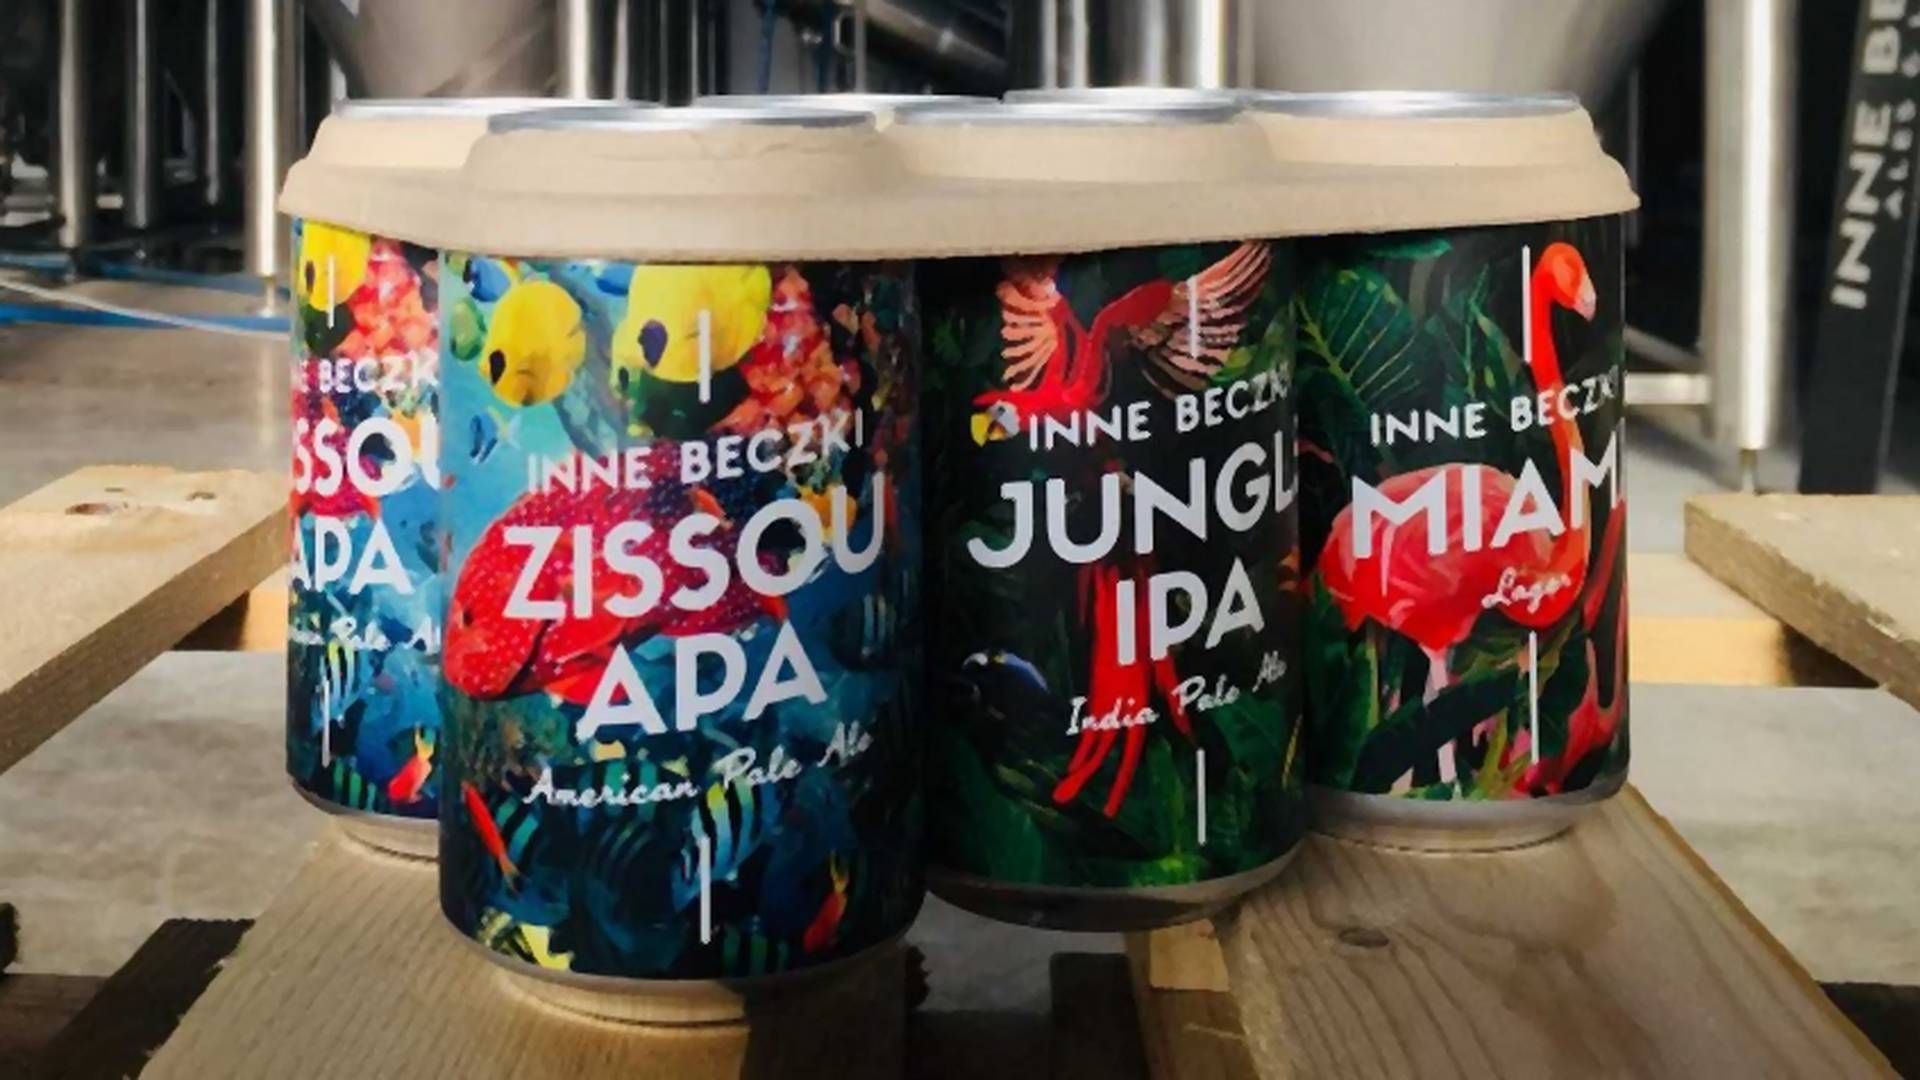 Warszawski browar Inne Beczki jako pierwszy w Europie zapakuje piwo dla dobra natury